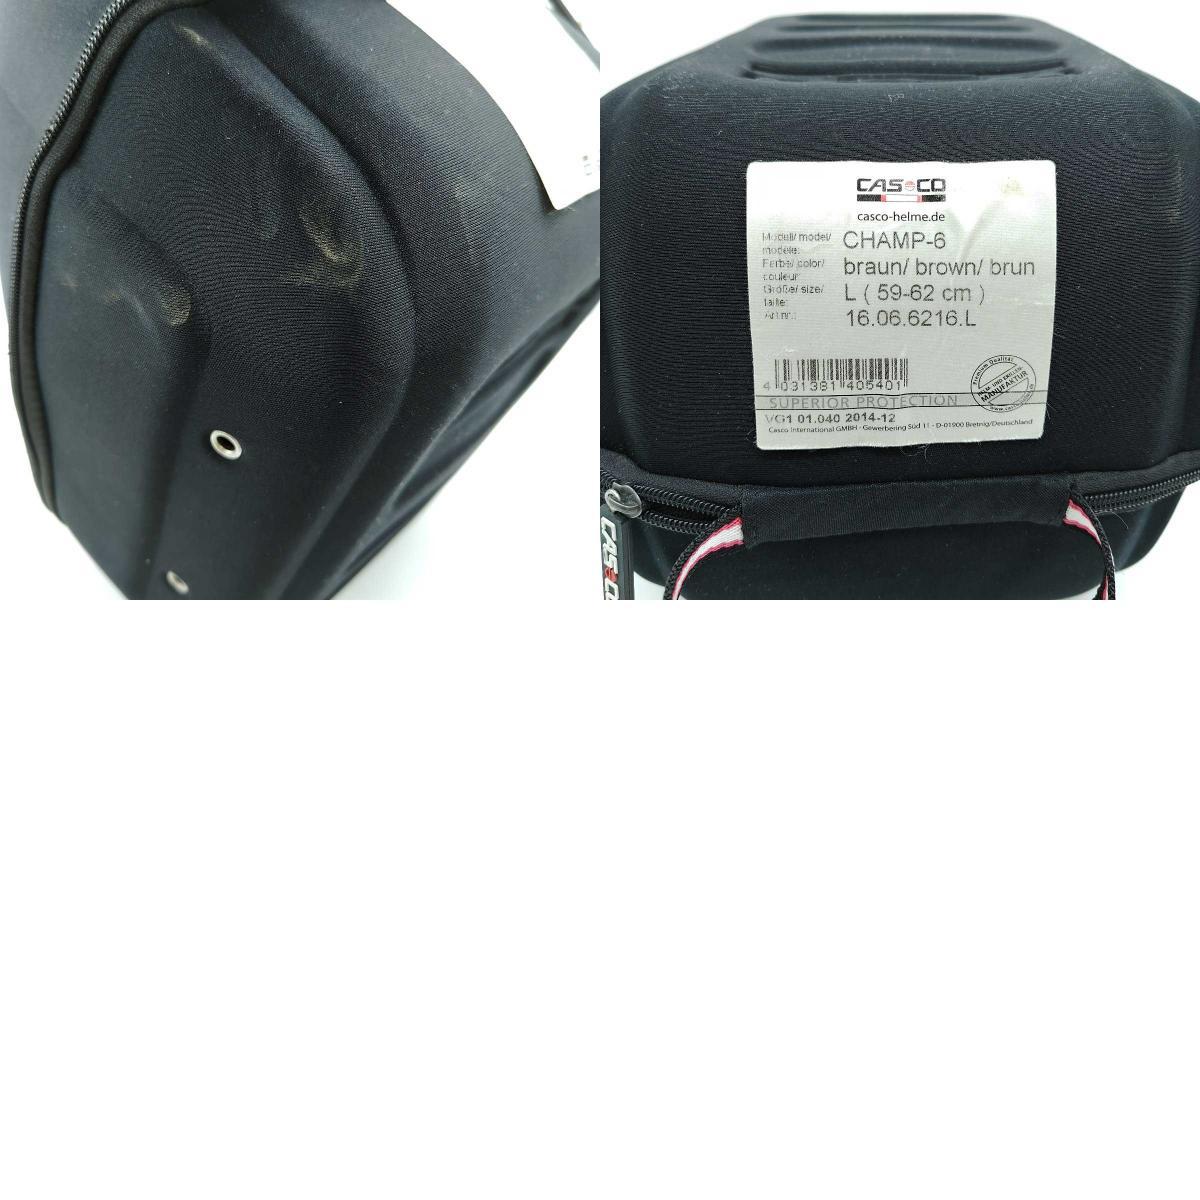 [ used ] rental ko Champ 6 CHAMP-6 horse riding horsemanship helmet L (59-62cm) CASCO light brown case attaching 